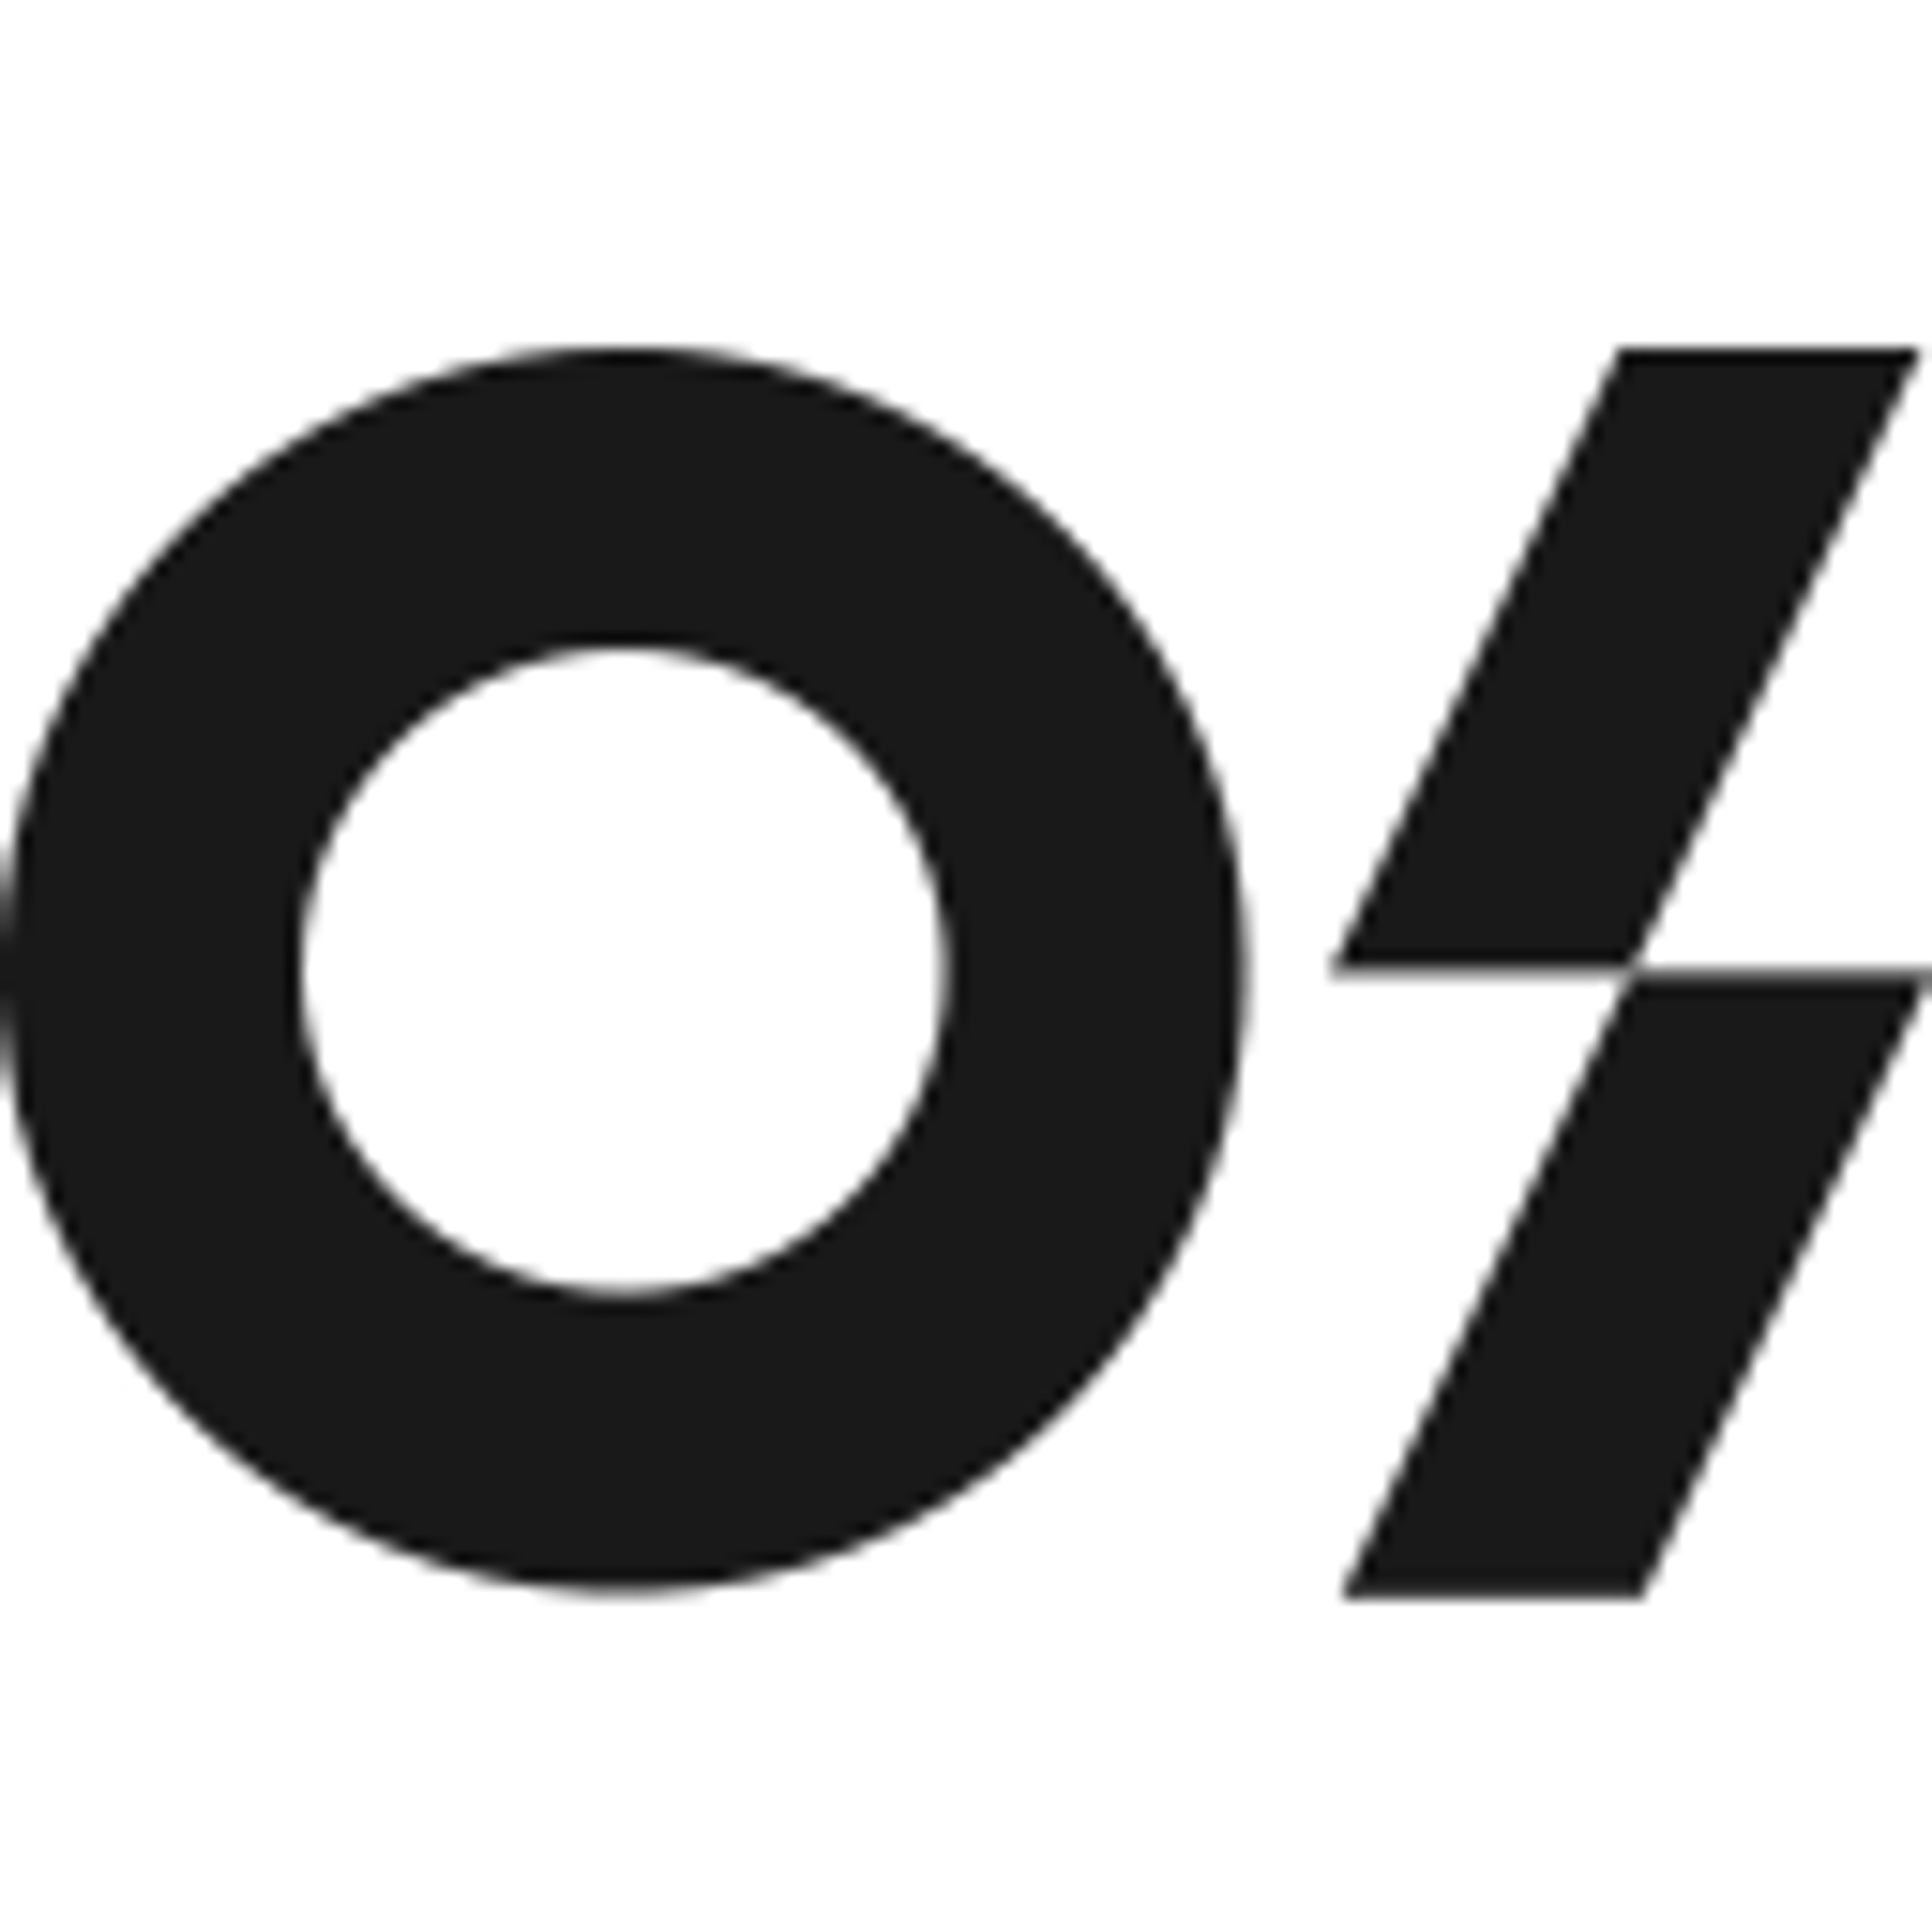 o/branding                                                                                                               